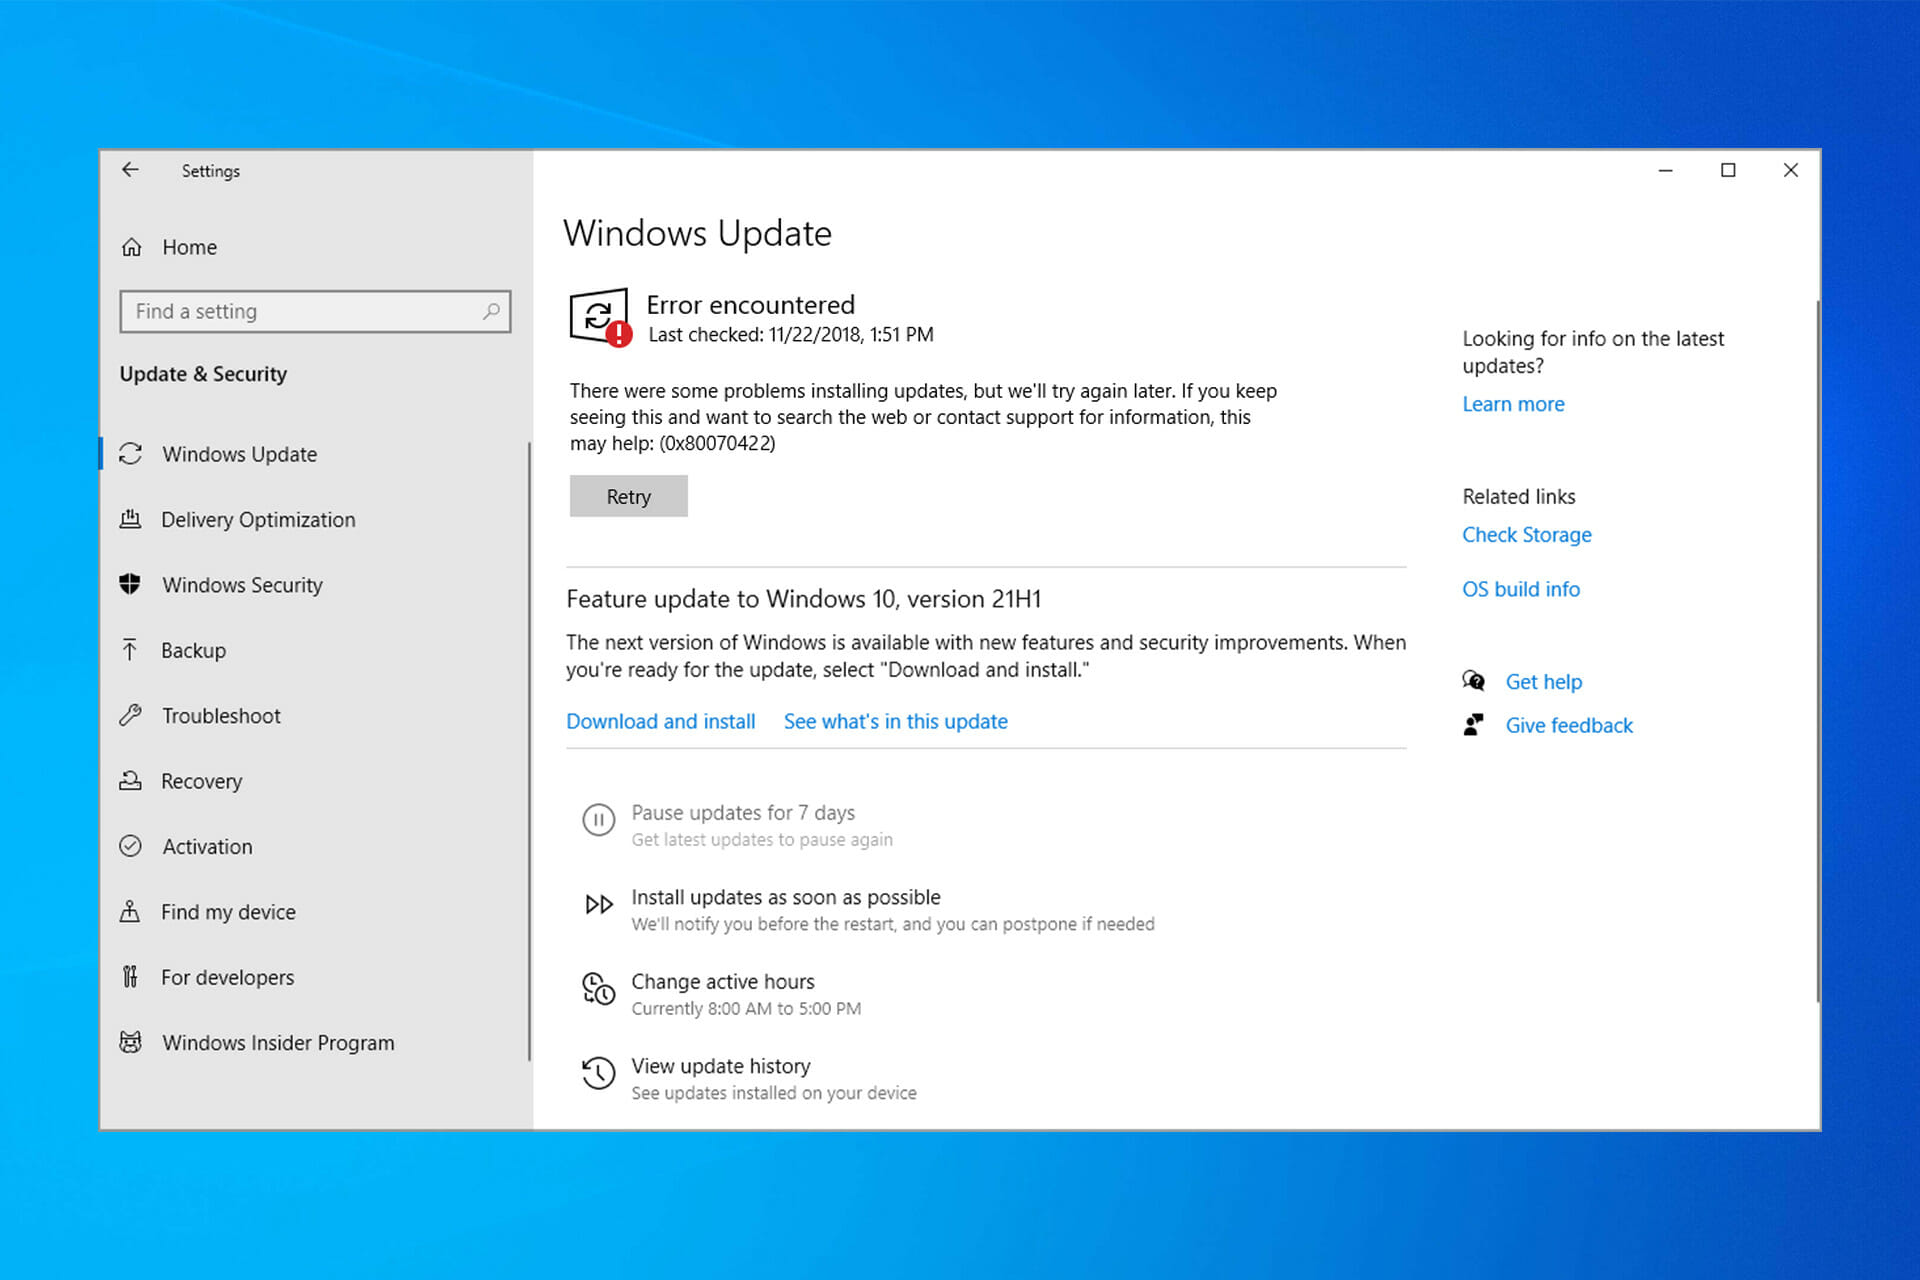 Windows 10 update error 0x80070422